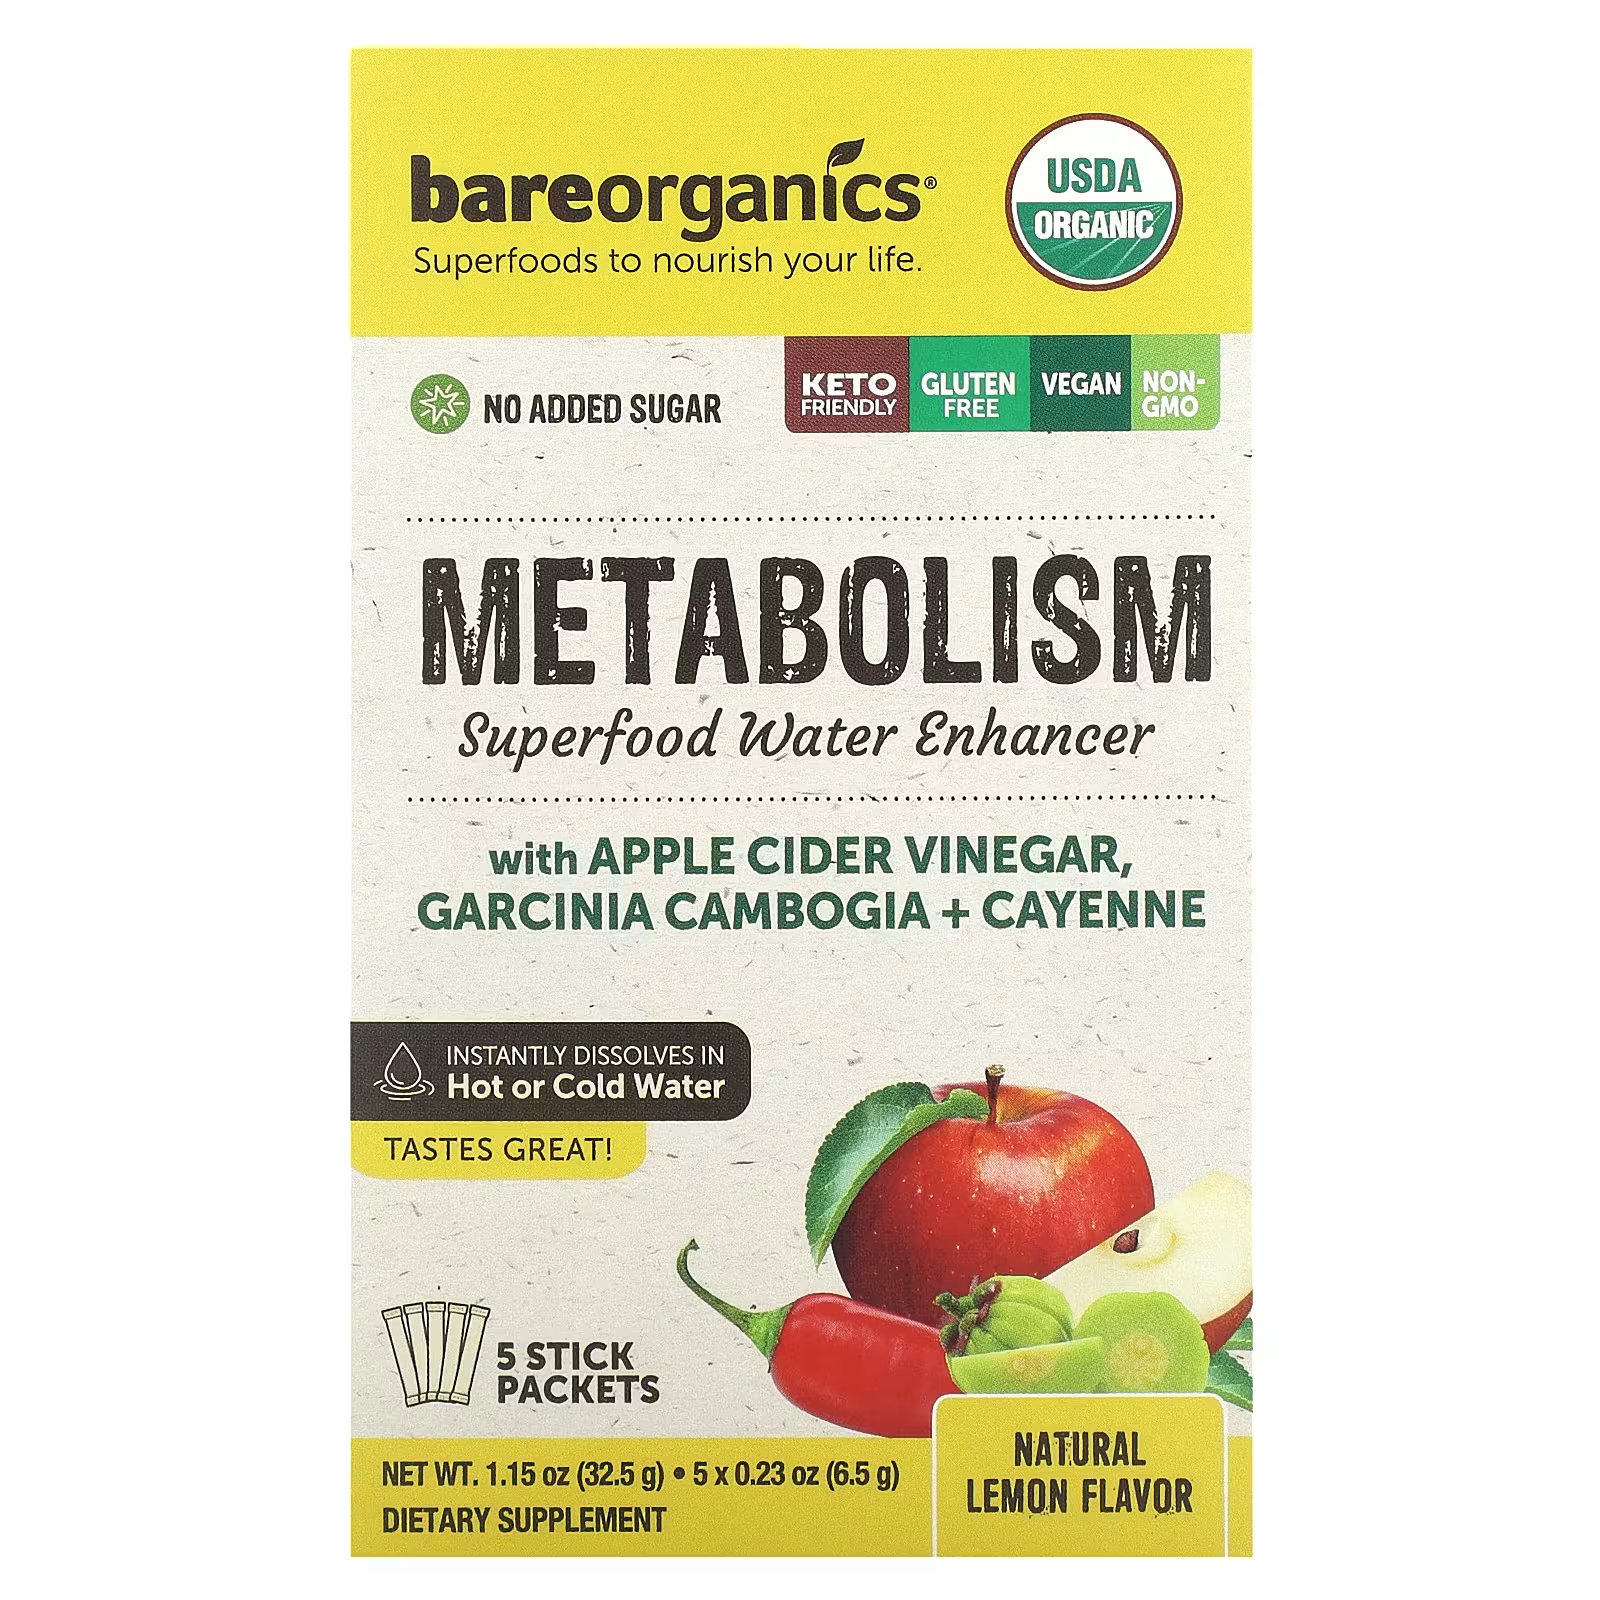 Пищевая добавка BareOrganics Superfood Water Enhancer Natural Lemon, 5 пакетиков по 6,5 г